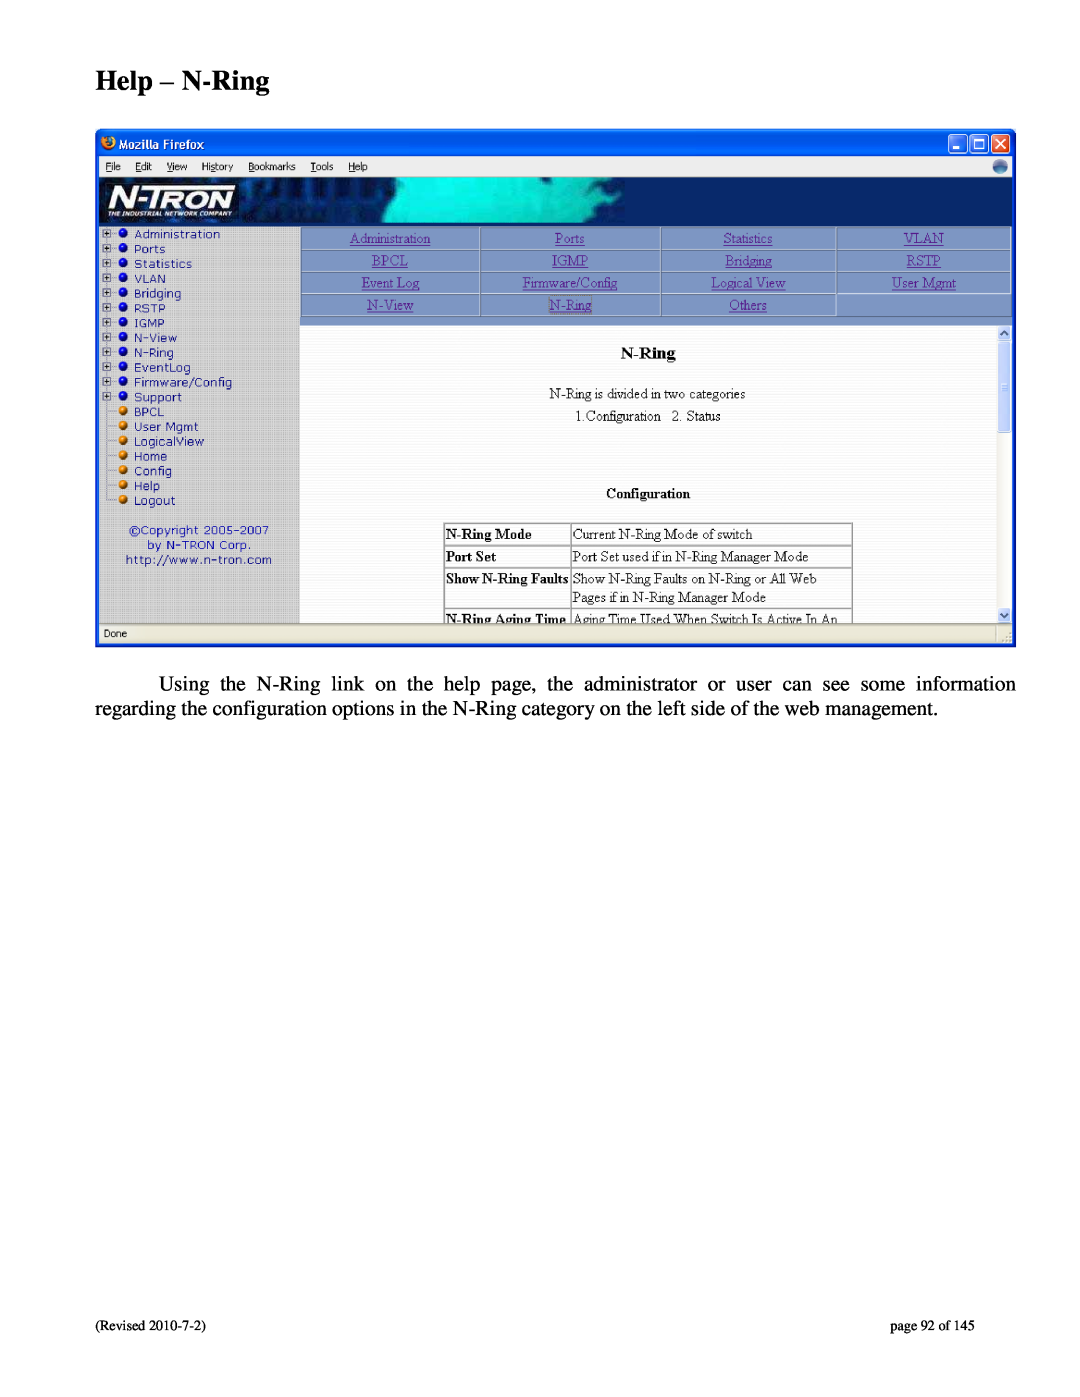 N-Tron 9000 user manual Help - N-Ring, page 92 of 